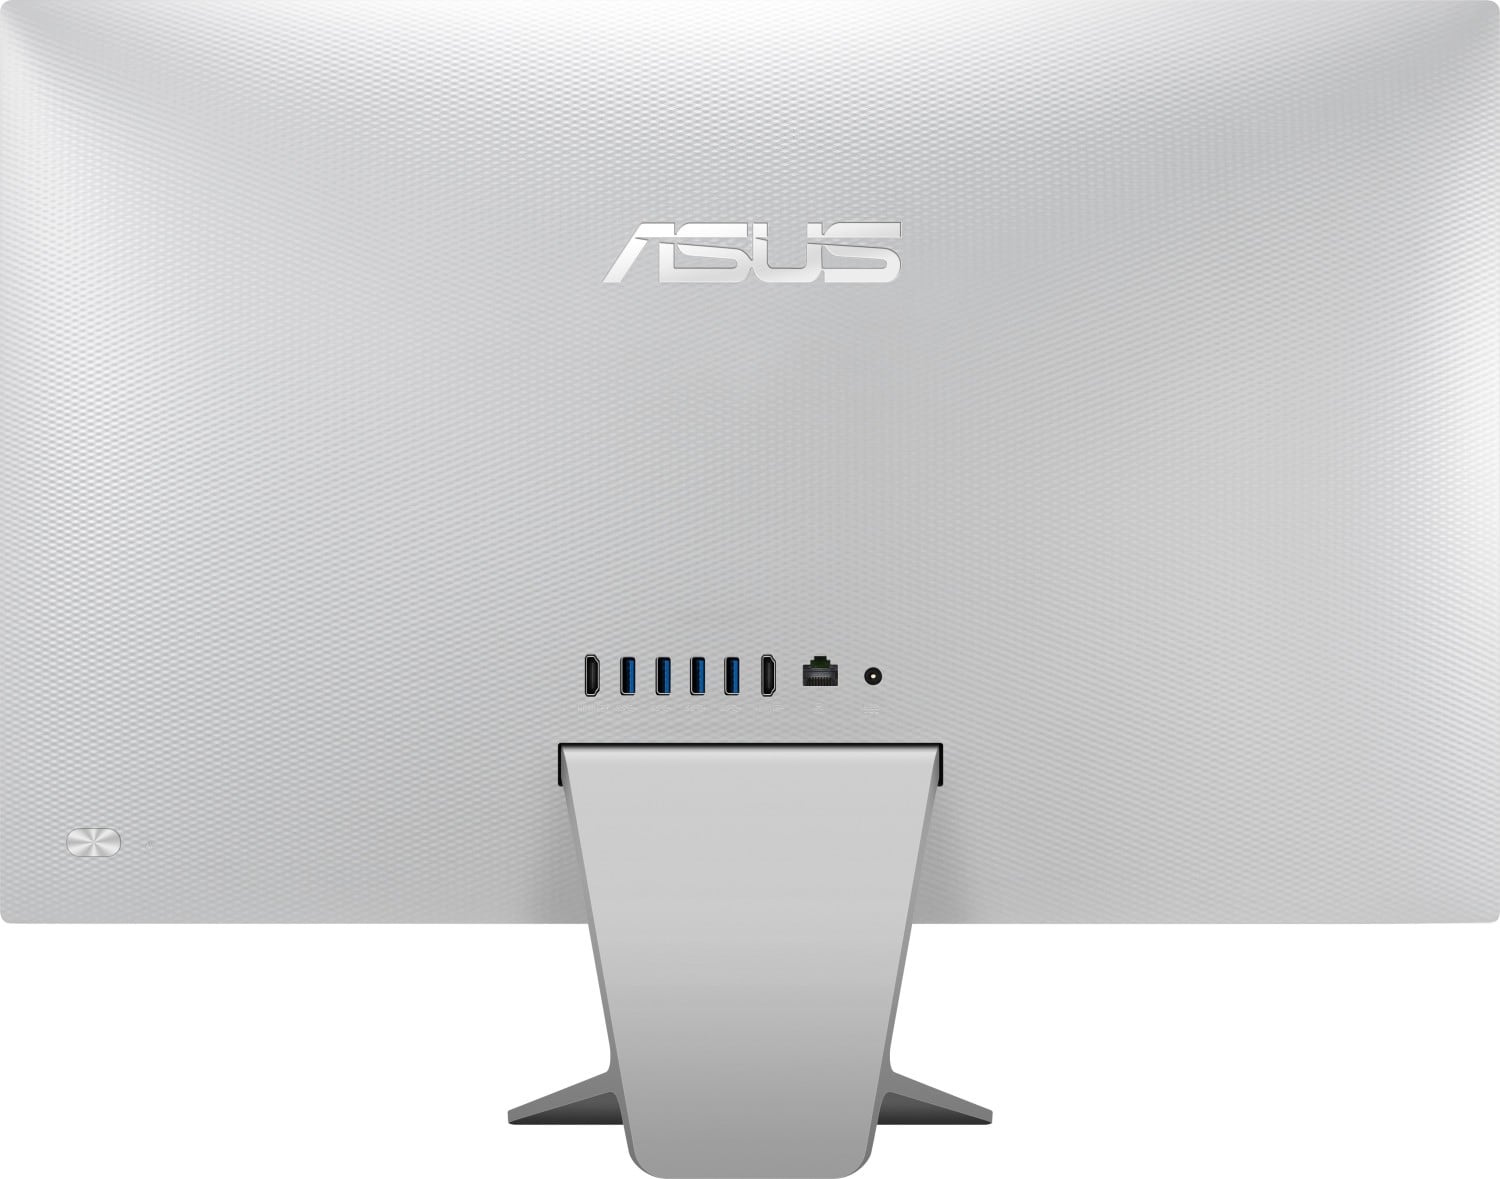 Asus | All in One PC | 23,8" Full HD Touchdisplay | Intel Core i5 | 8GB RAM | 256GB SSD | Win10Pro | inkl. Maus+Tastatur | V241EAT-WA003D